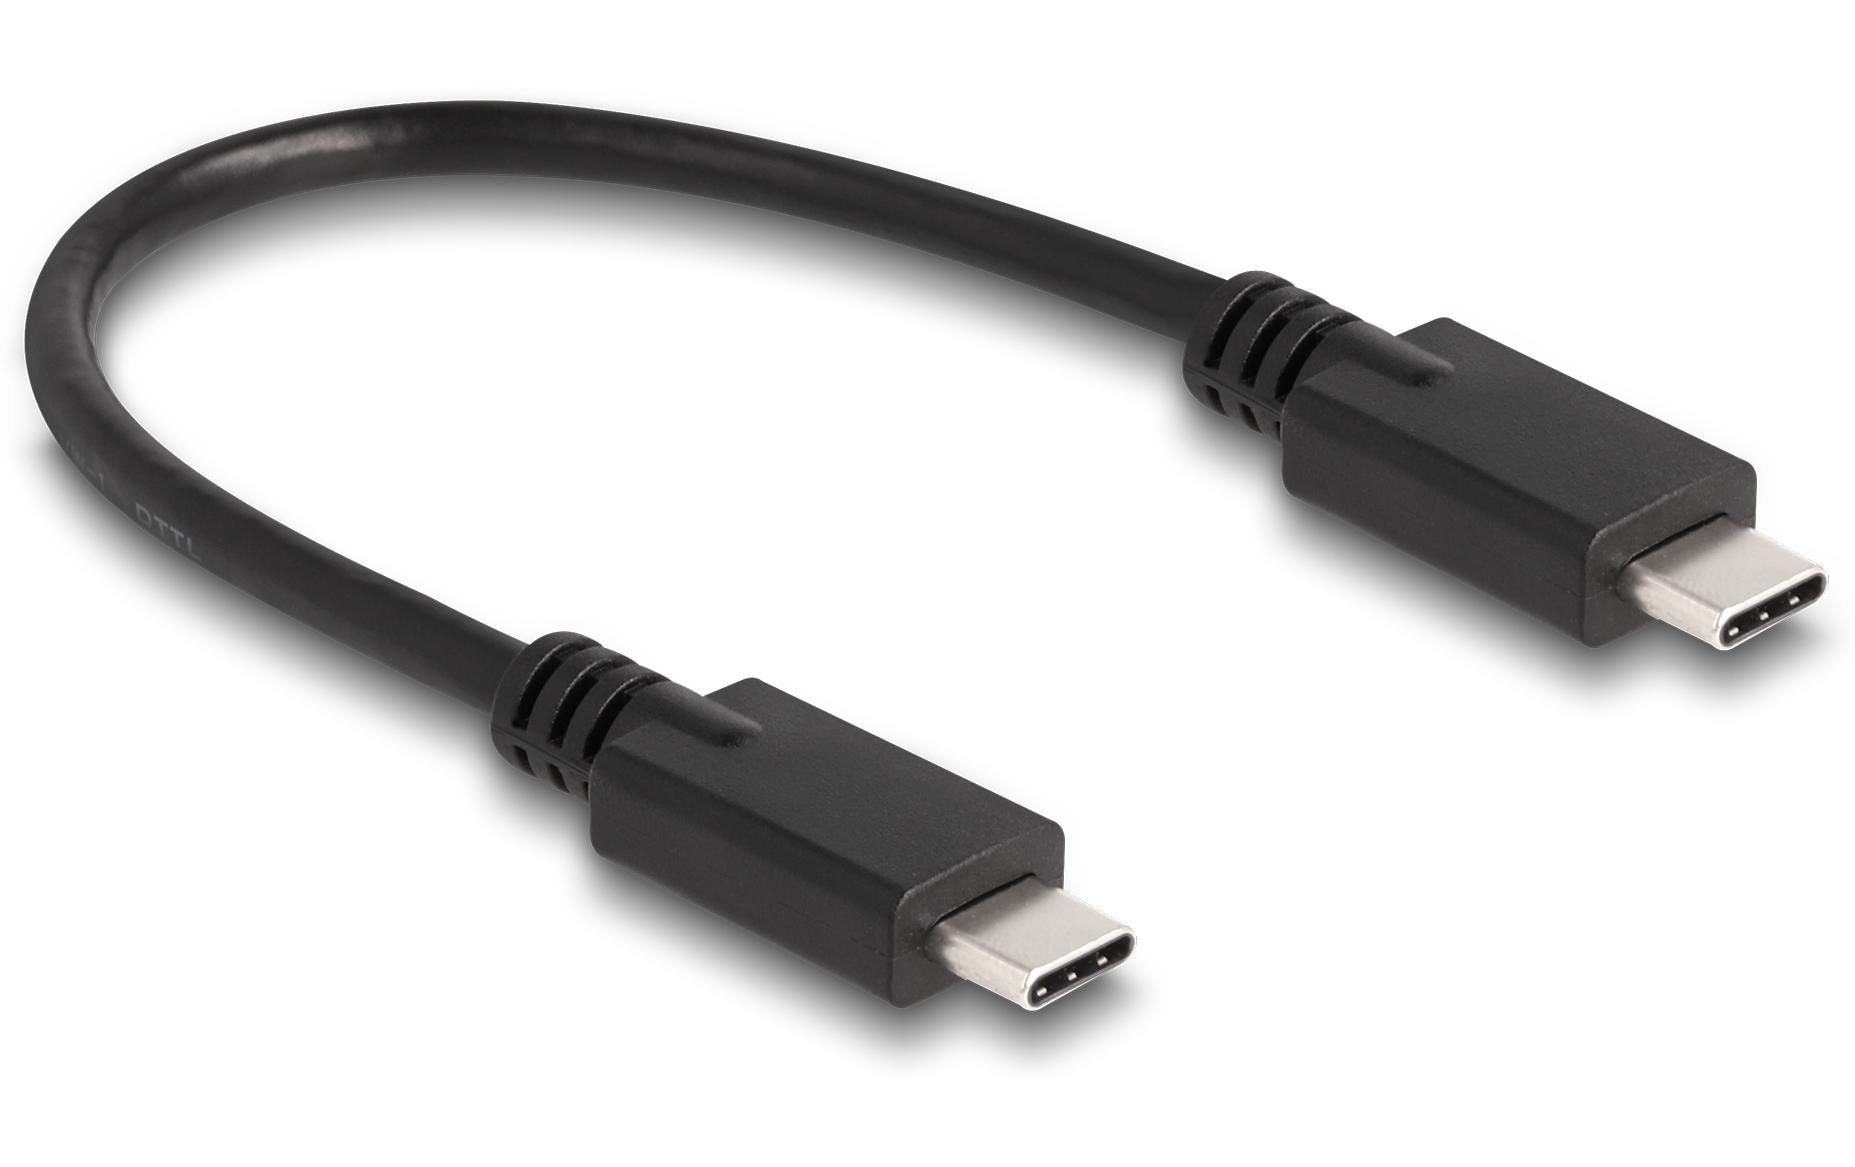 Delock USB-Hub 2x 10 Gbps USB Typ-C und 1 x USB Type-A